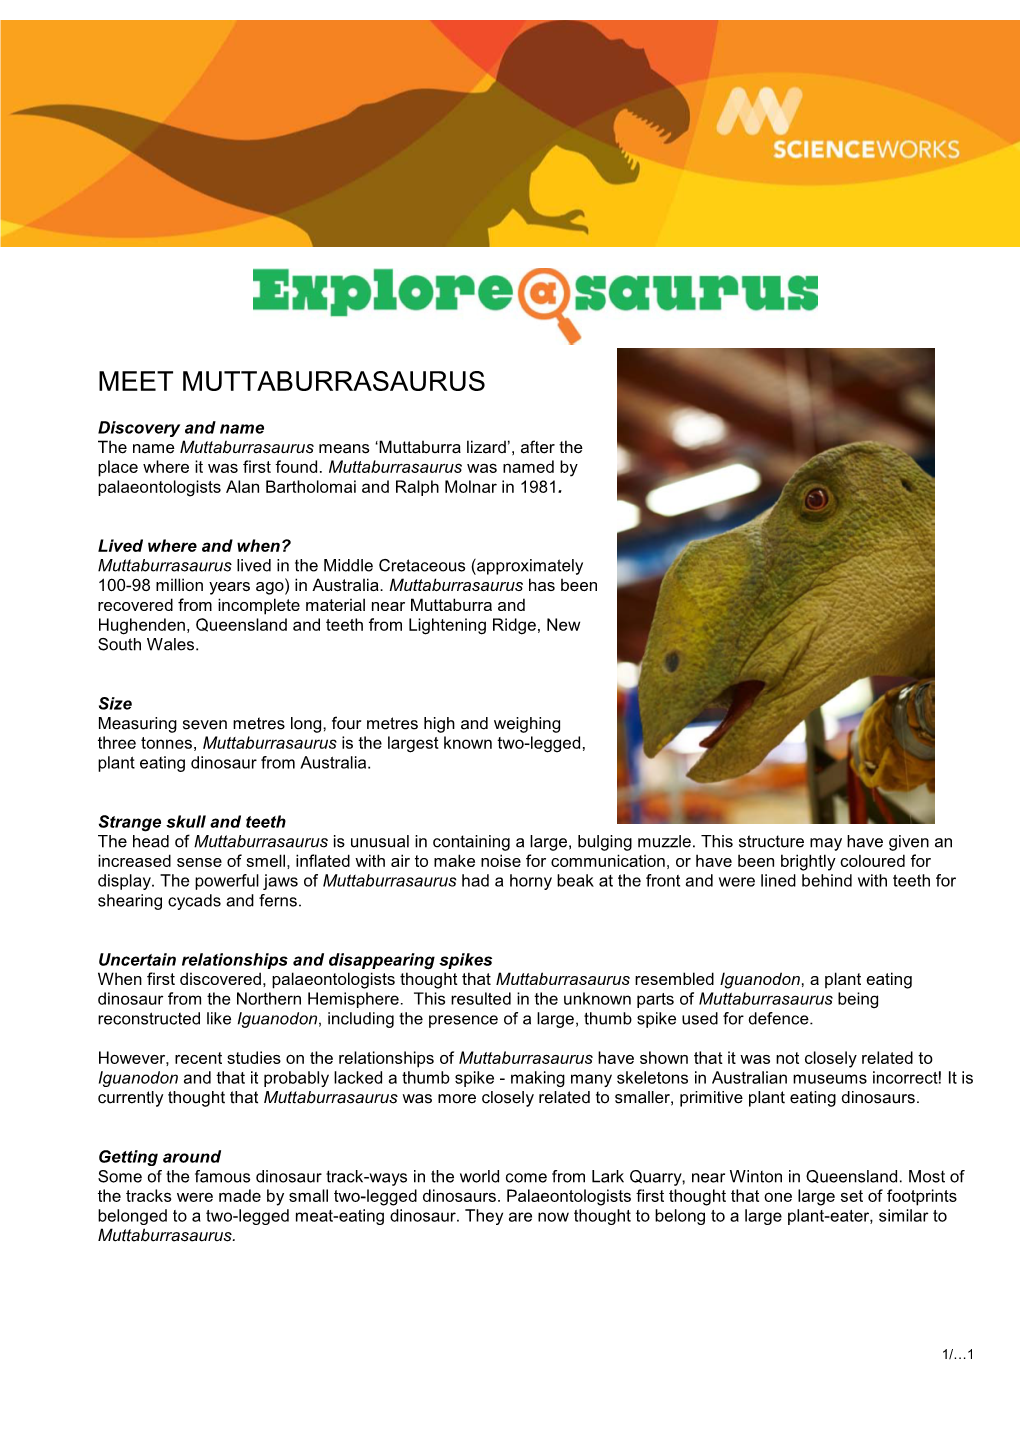 Meet Muttaburrasaurus